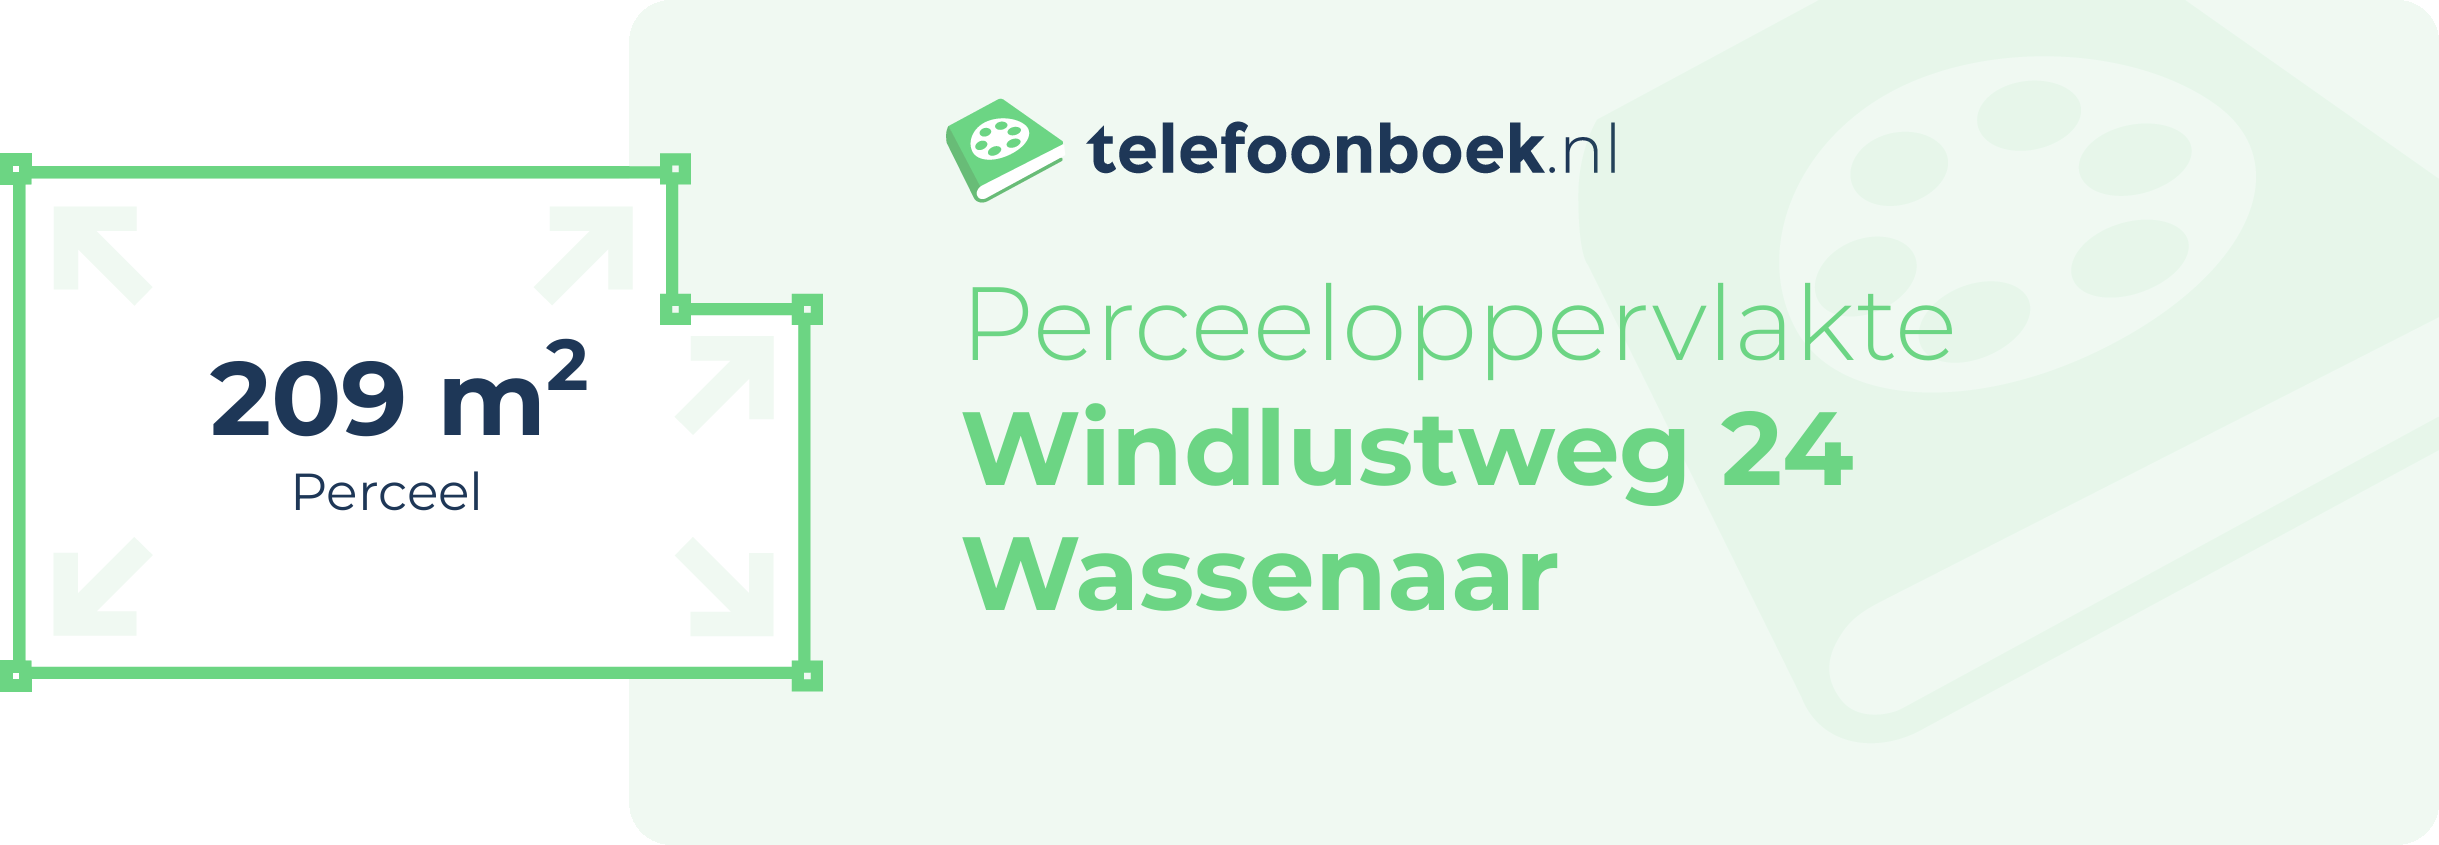 Perceeloppervlakte Windlustweg 24 Wassenaar